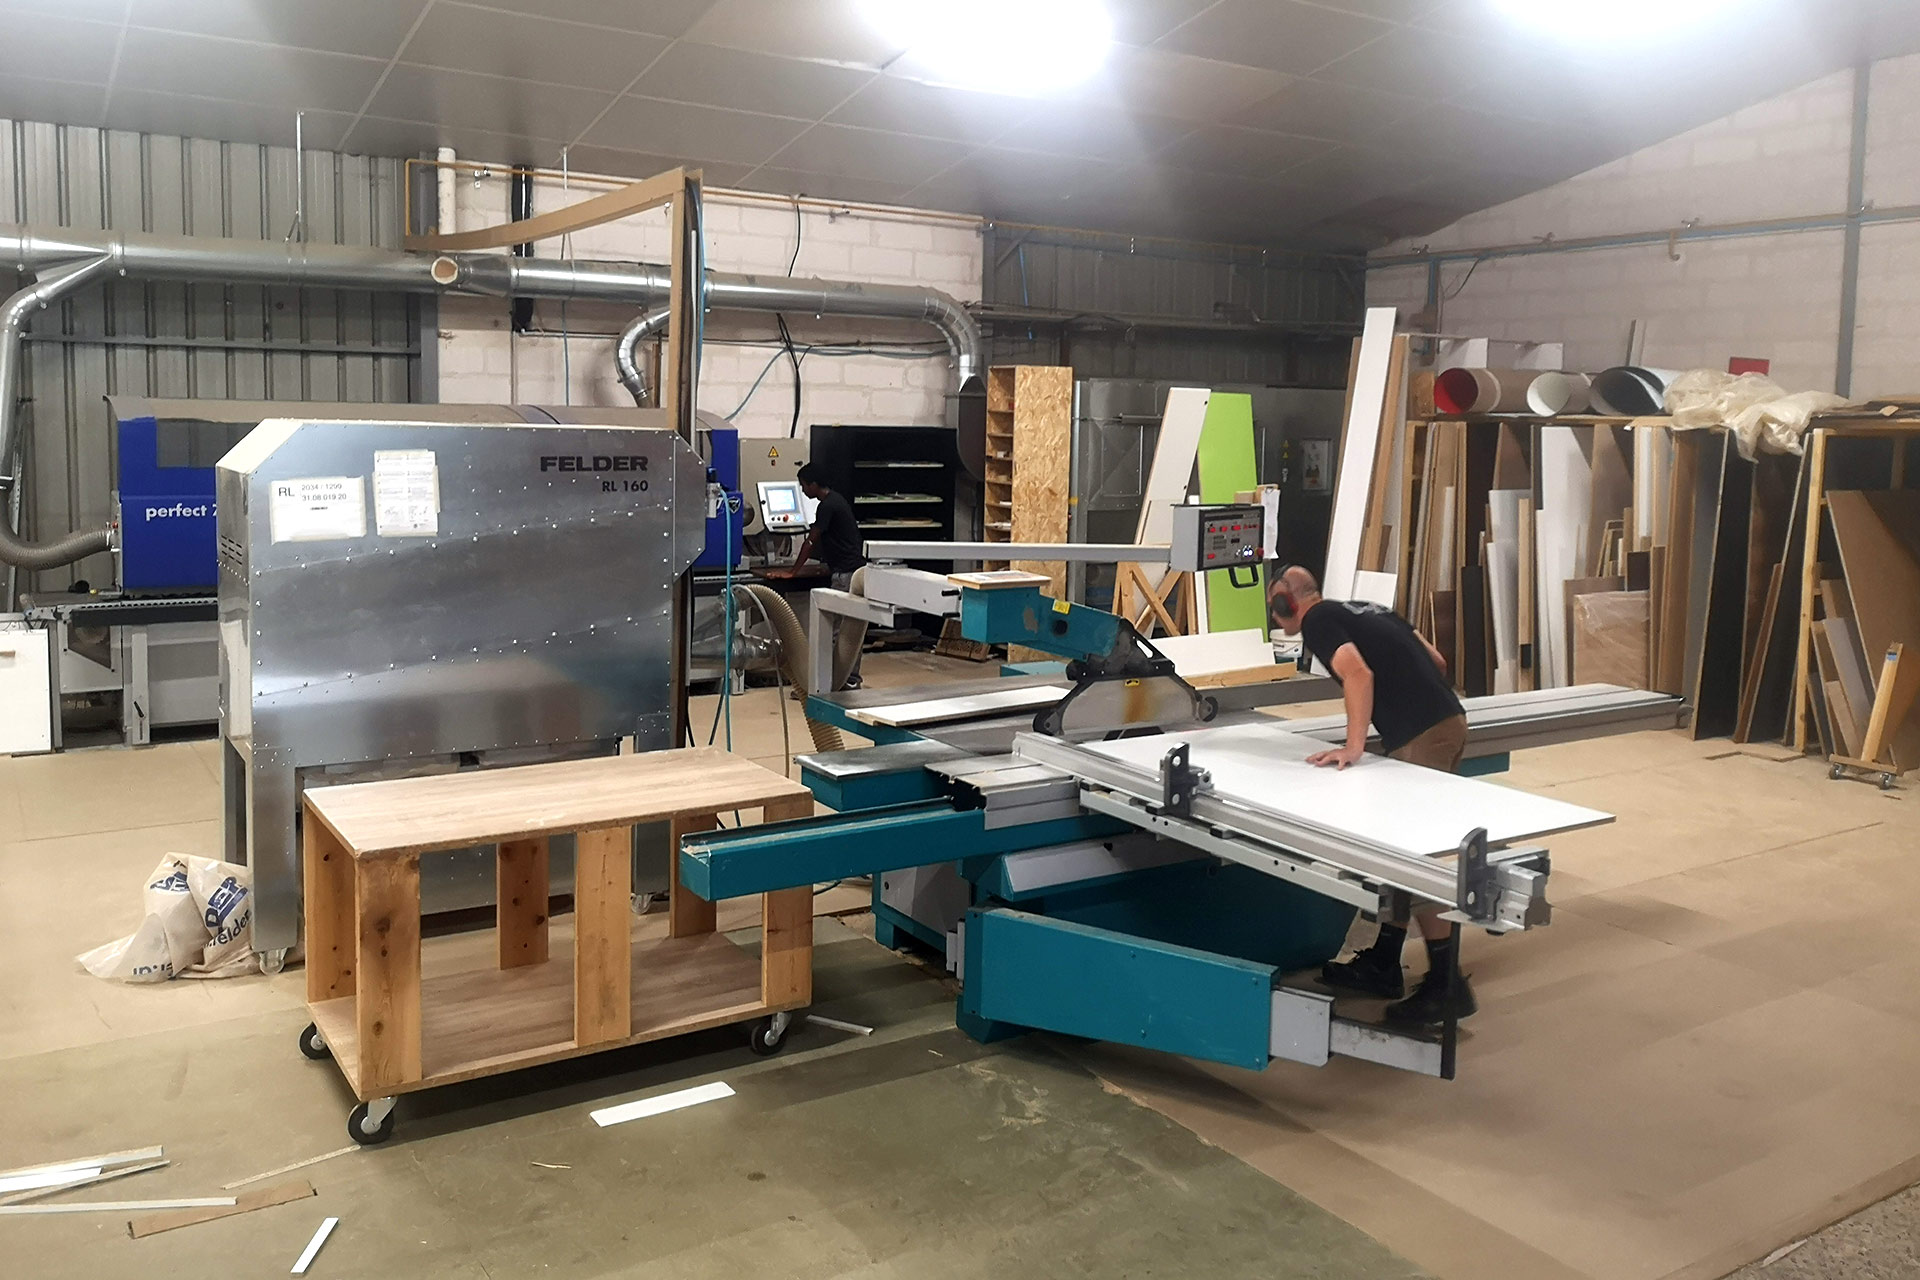 Découpe de planches au sein de l’atelier partagé Cobro dédié aux professionnel·les du bois, à Villeurbanne (métropole de Lyon)